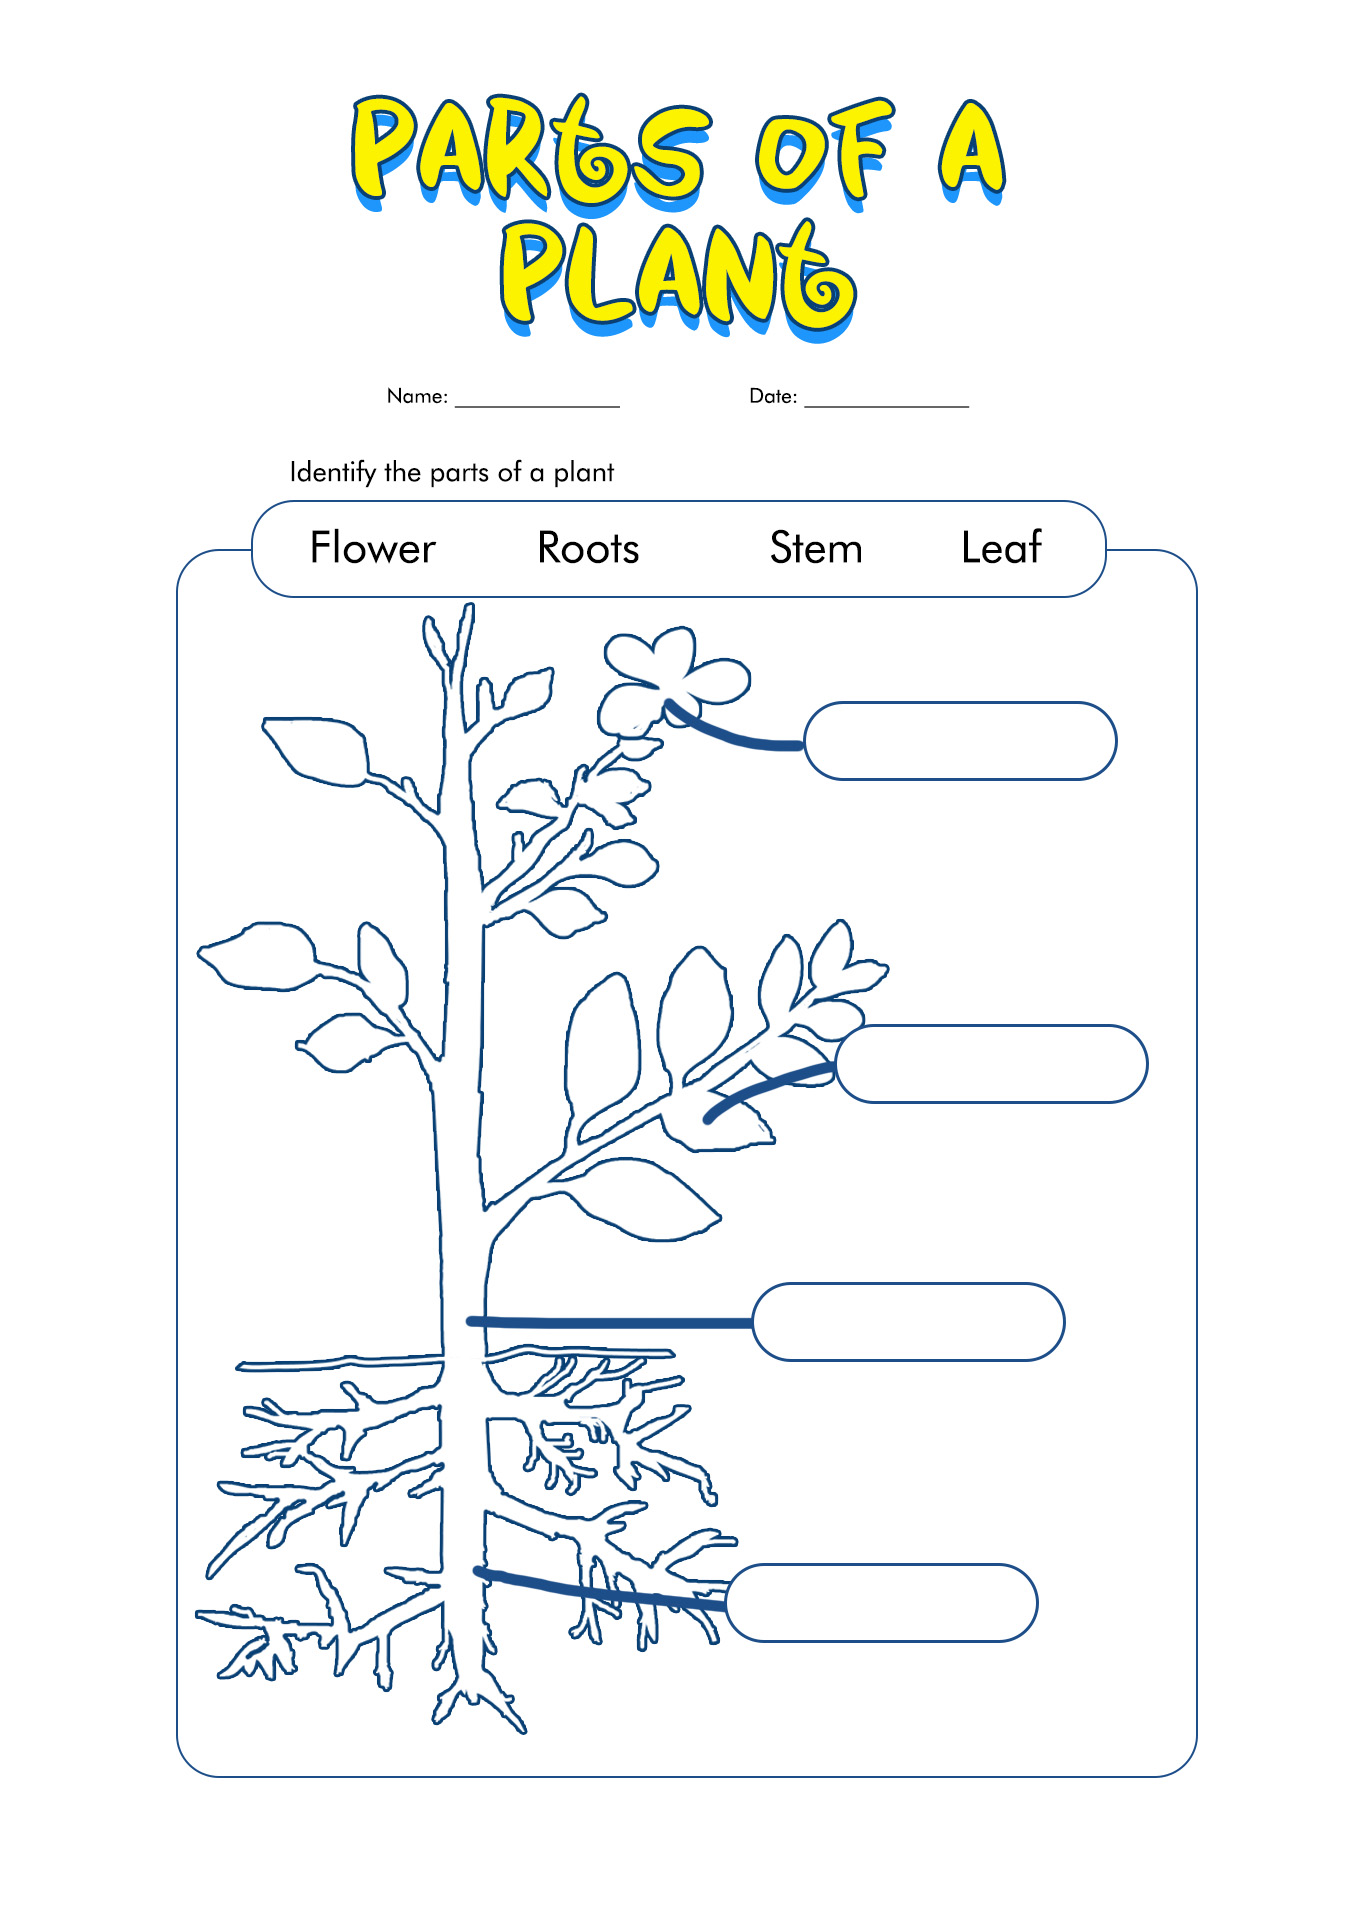 Plant Parts Worksheet 1st Grade Image